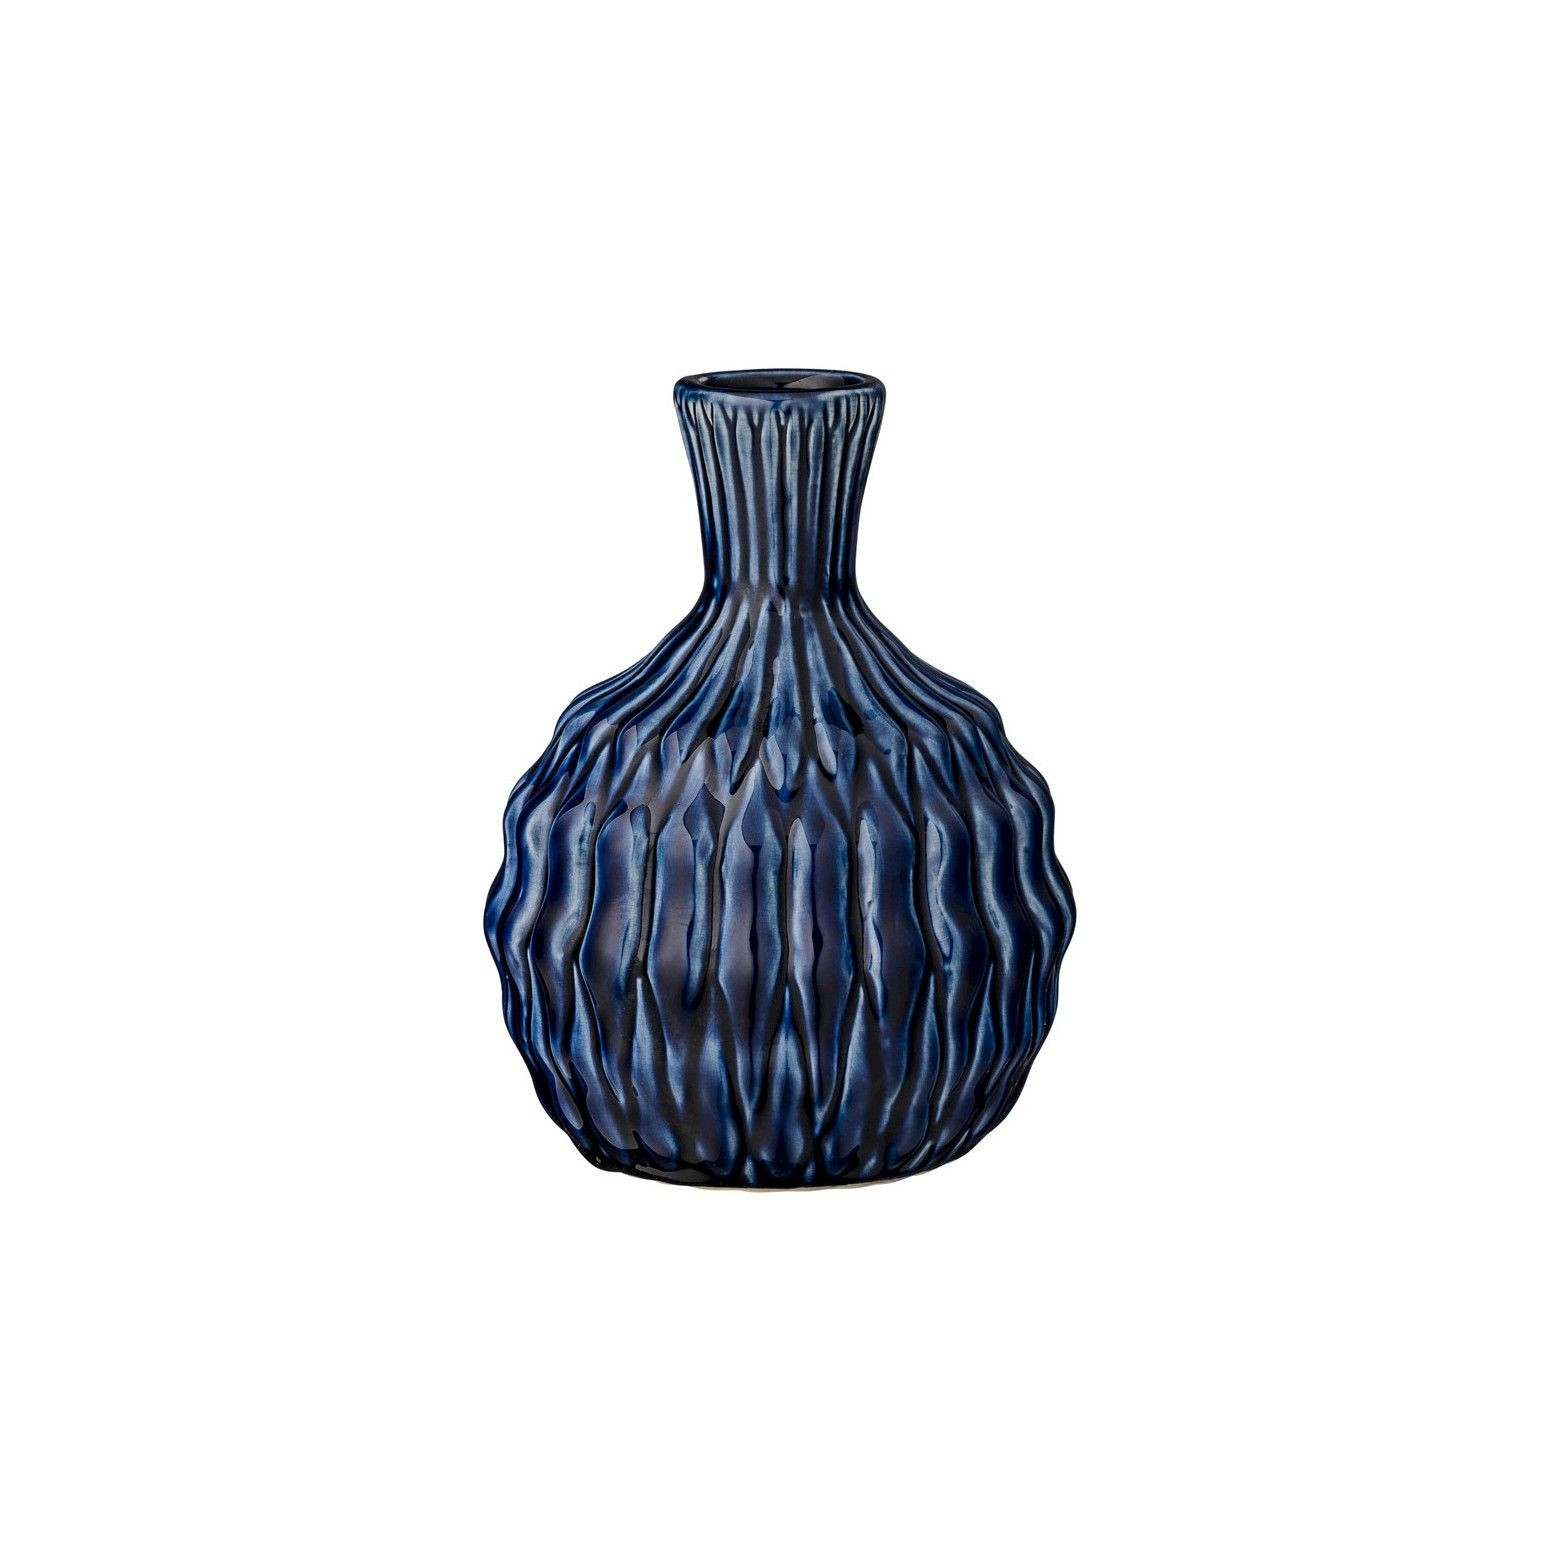 16 Wonderful Target Glass Vase 2024 free download target glass vase of ceramic vase navy blue 6 3r studios ceramic vase navy and throughout ceramic vase navy blue 6 3r studios